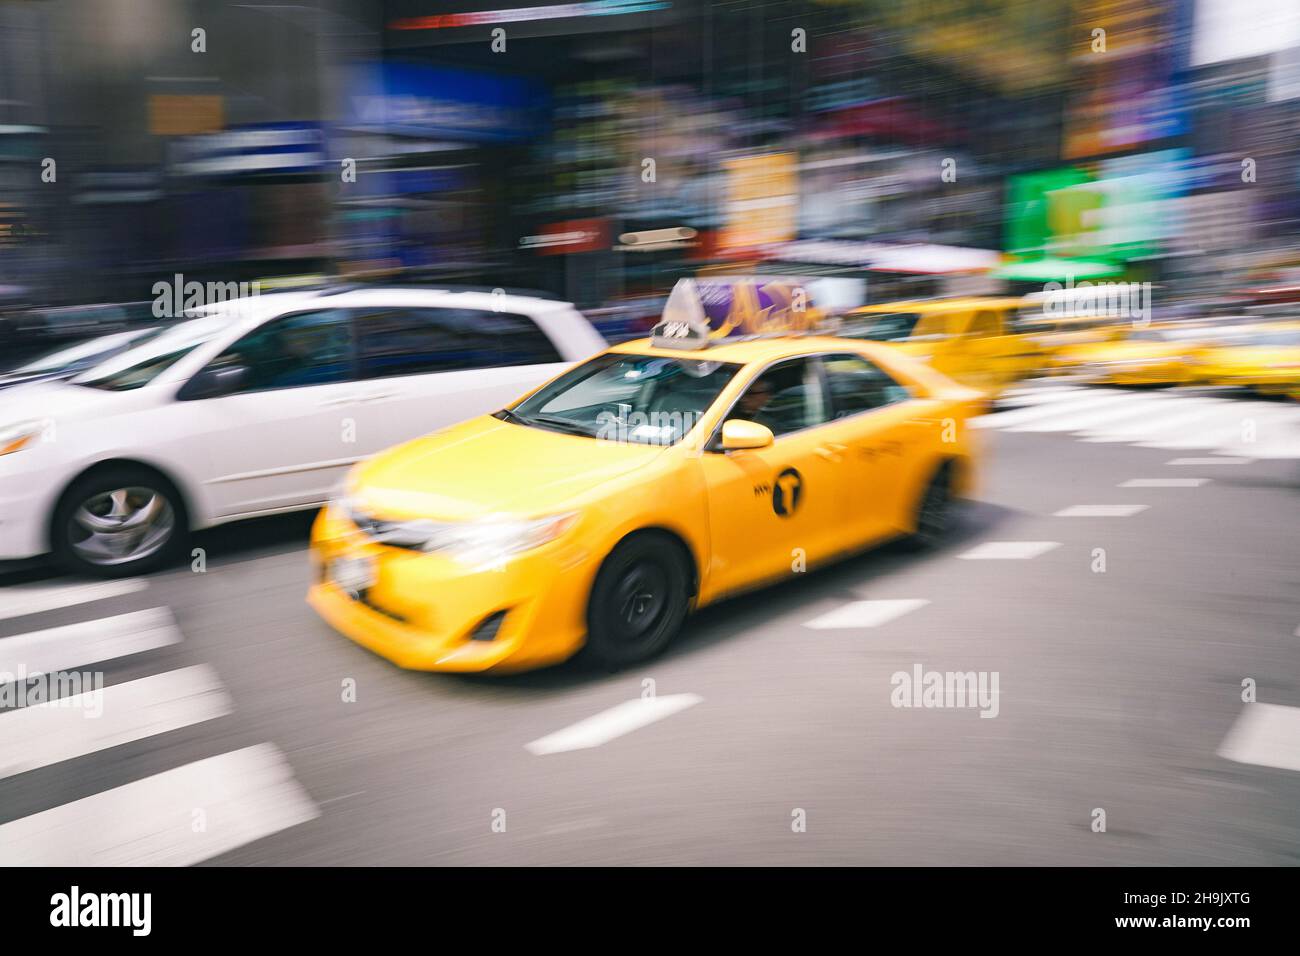 Un'immagine di un taxi giallo a New York City. Da una serie di immagini sperimentali che utilizzano una tecnica di transporto e panning lenti a New York City negli Stati Uniti. Da una serie di foto di viaggio negli Stati Uniti. Data foto: Venerdì 6 aprile 2018. Il credito fotografico dovrebbe essere: Richard Grey/EMPICS Foto Stock